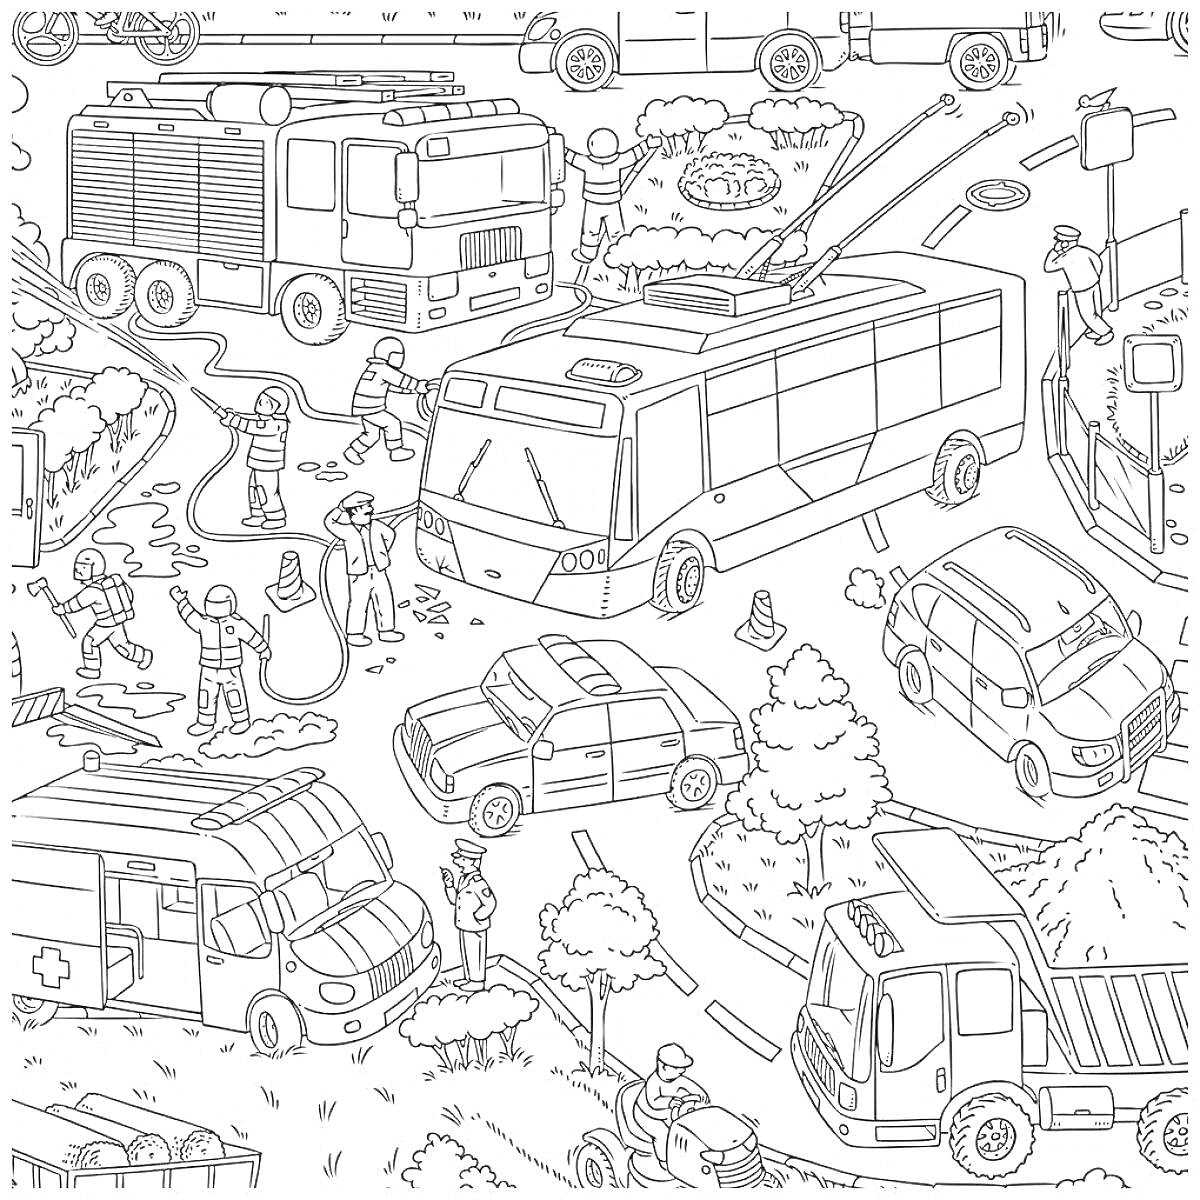 Раскраска Городской транспорт с грузовиком, пожарной машиной, автобусом, легковыми автомобилями, скорой помощью и строителями